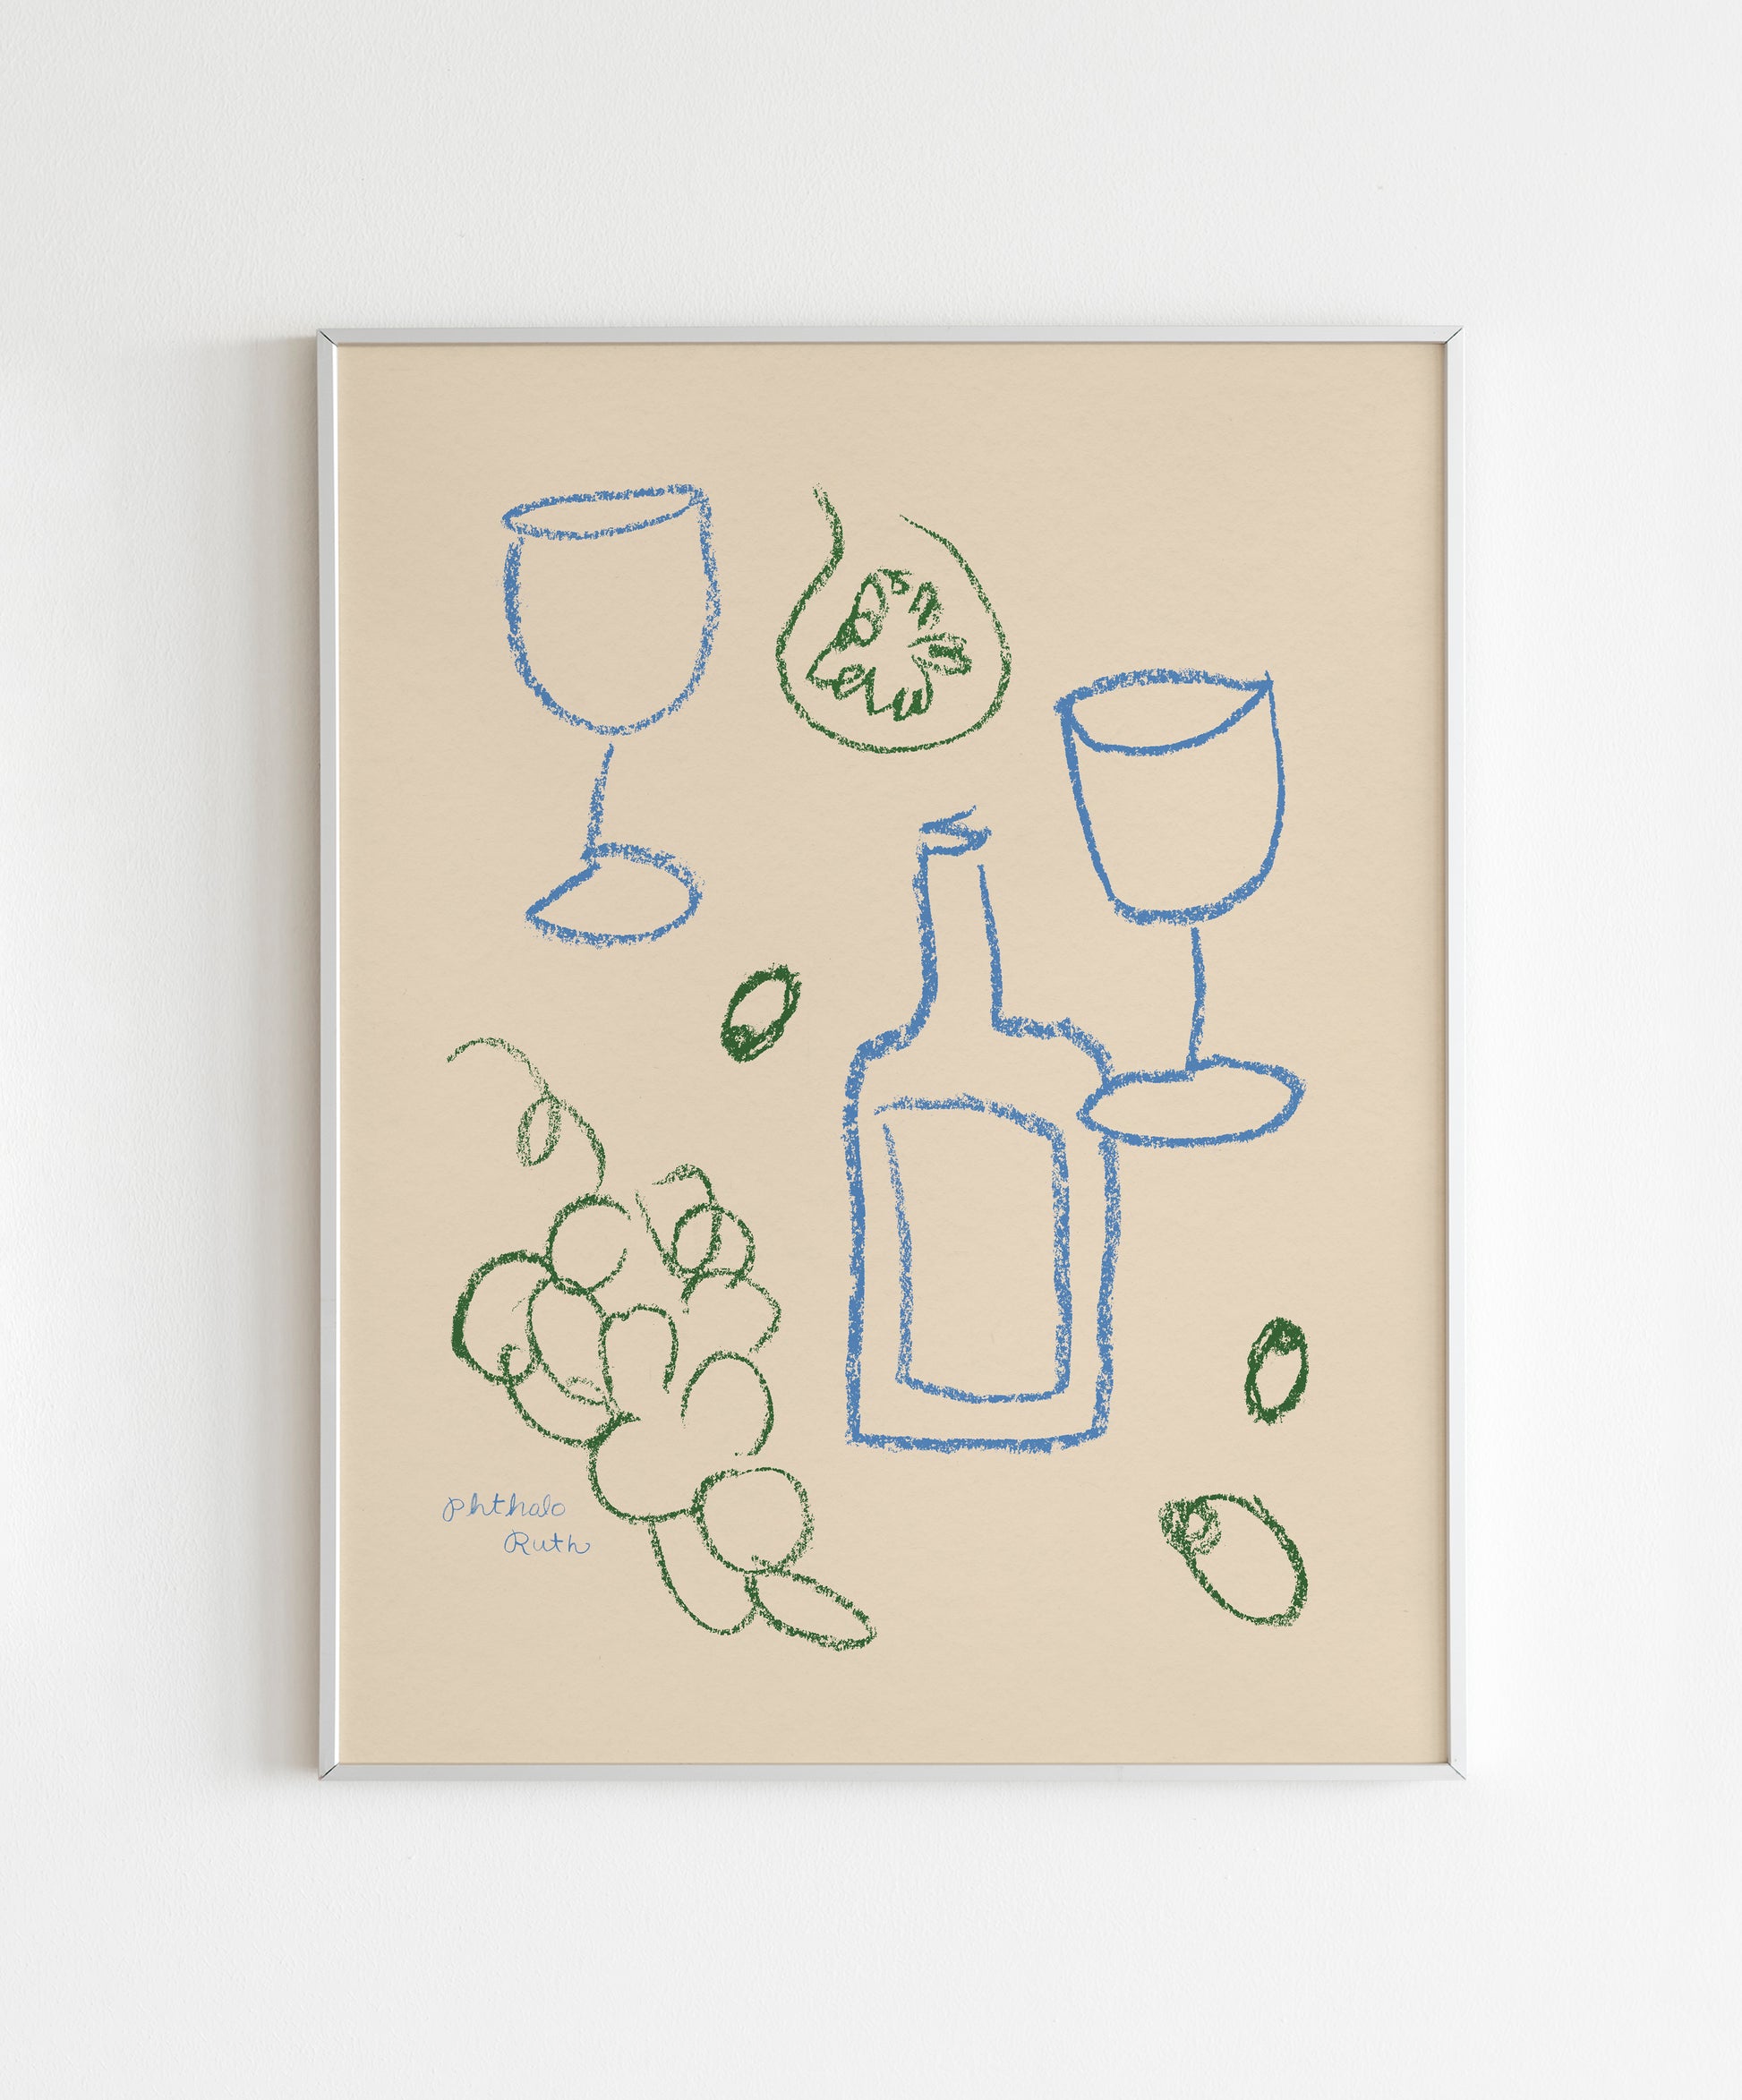 Wine Glass & Bottle Single Line Art Print